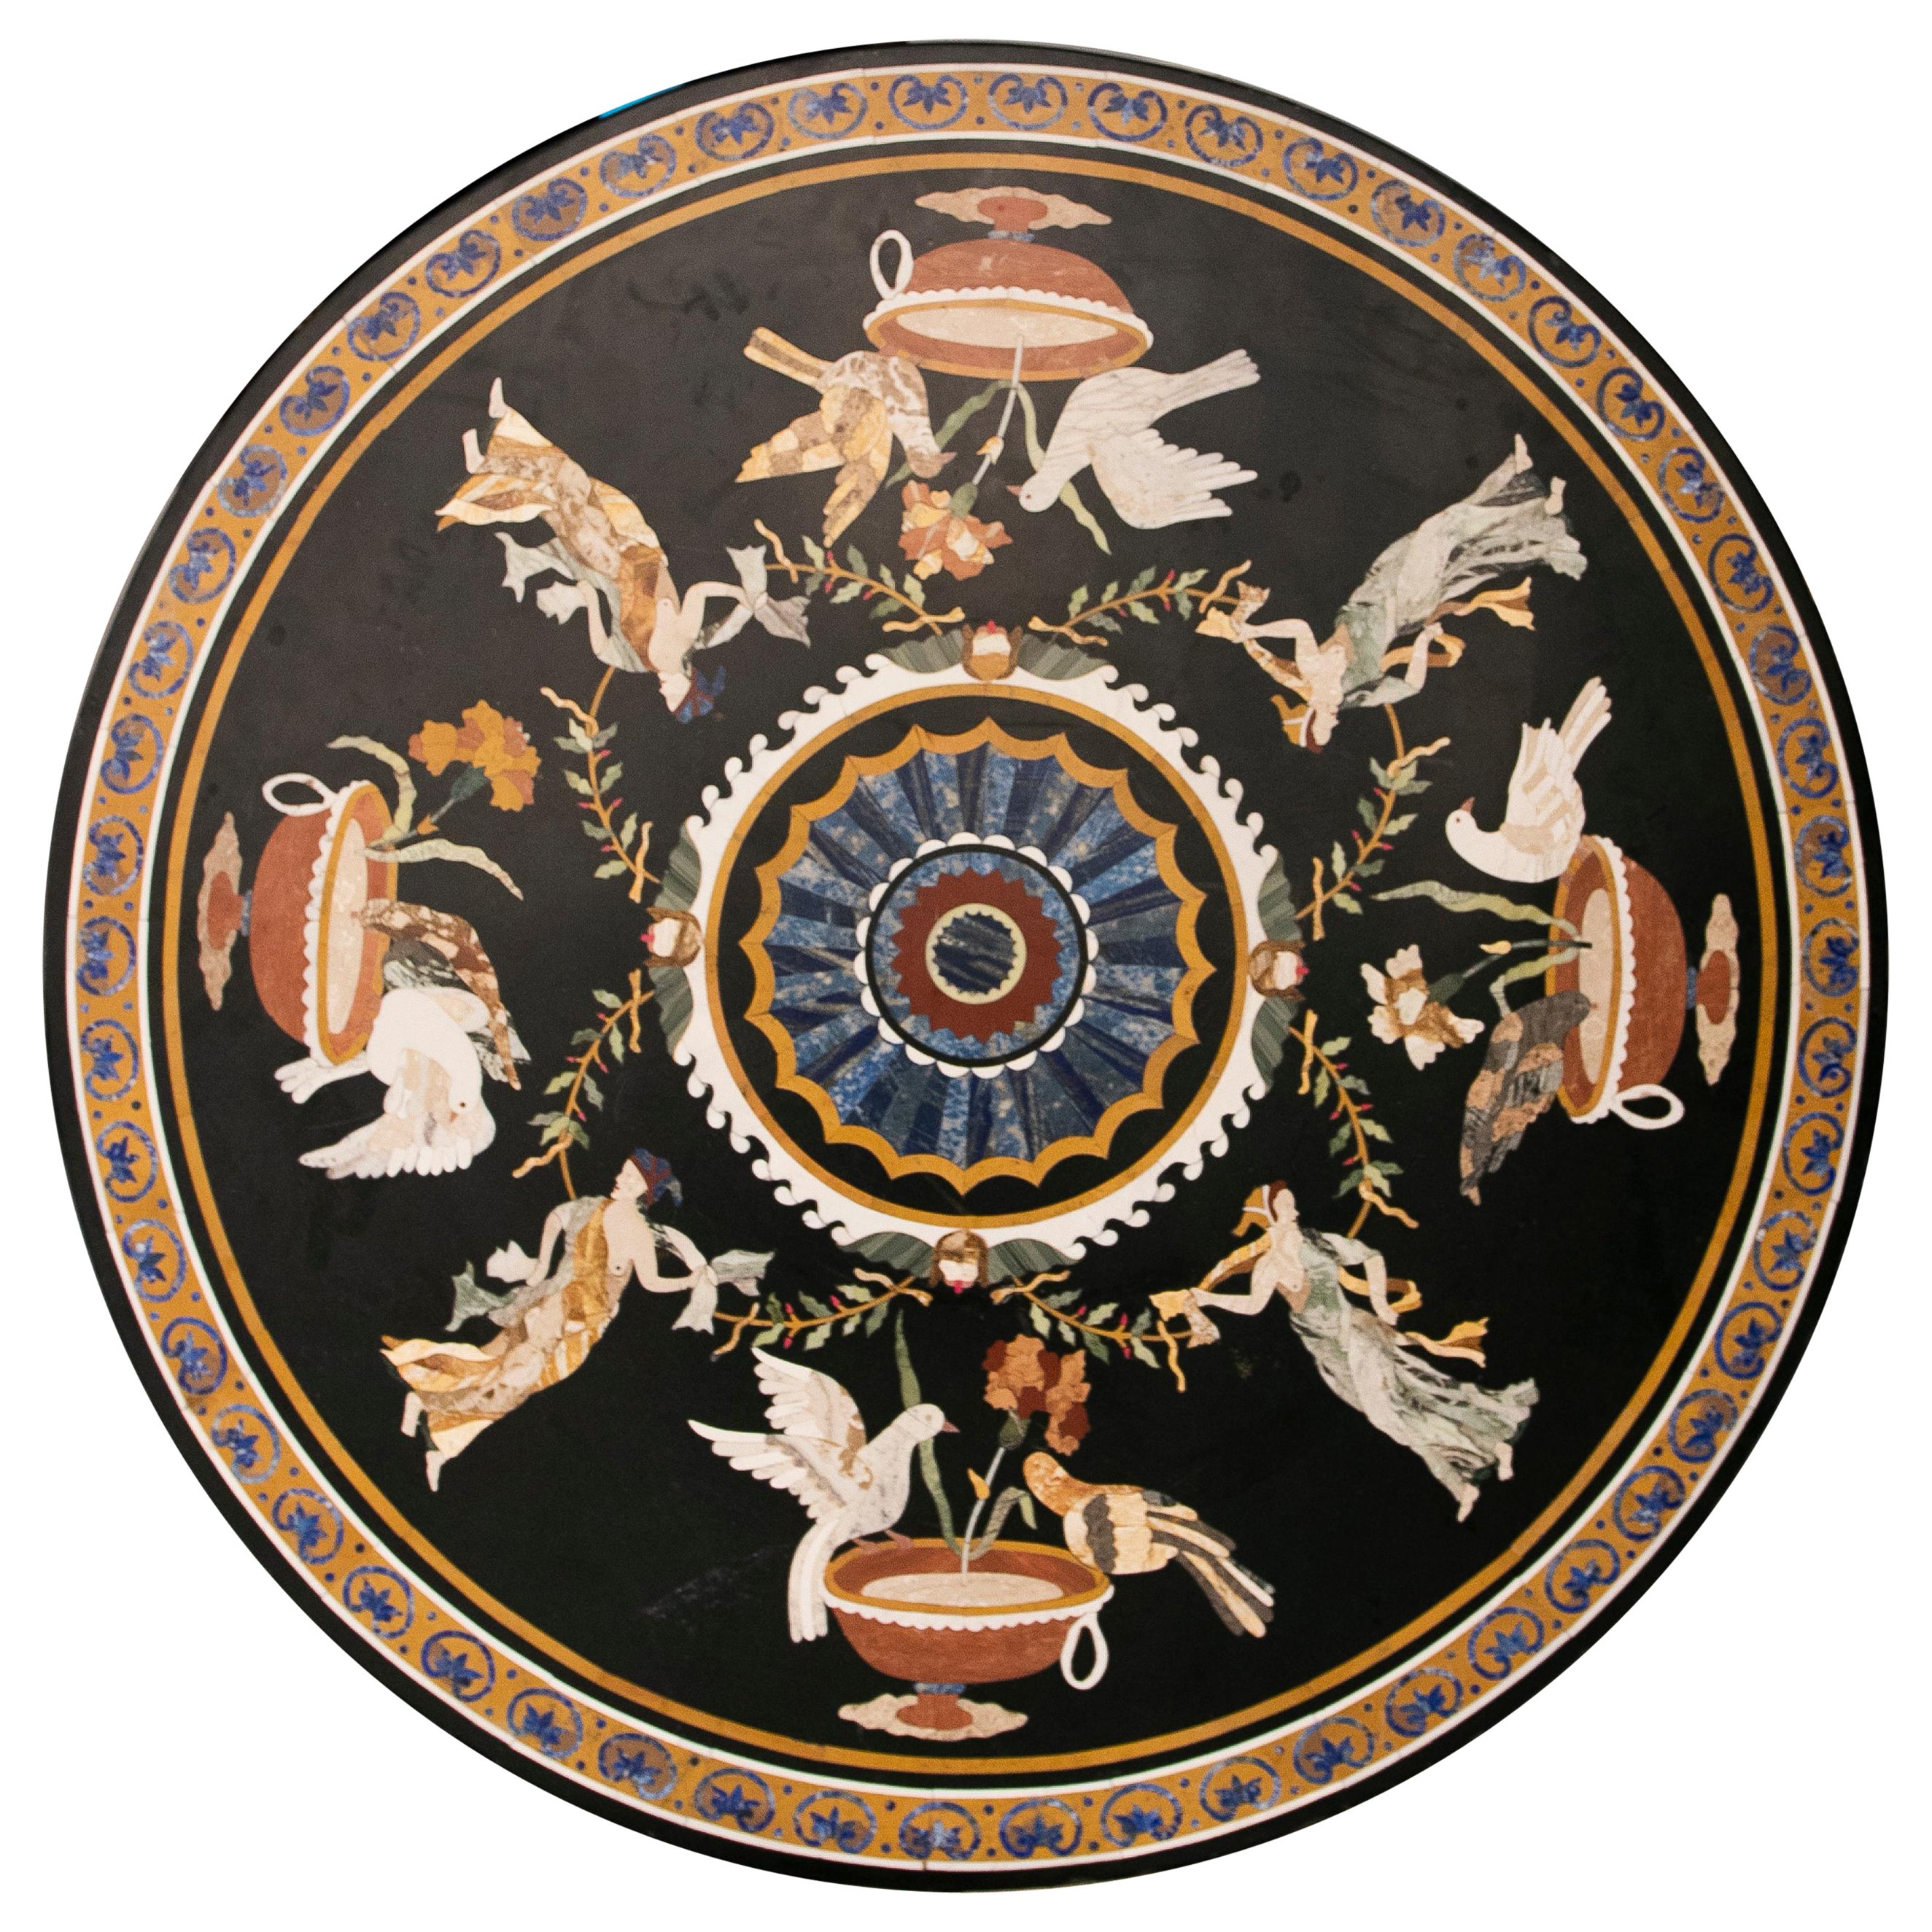 Table circulaire en marbre incrustée de pierres dures représentant des scènes grecques